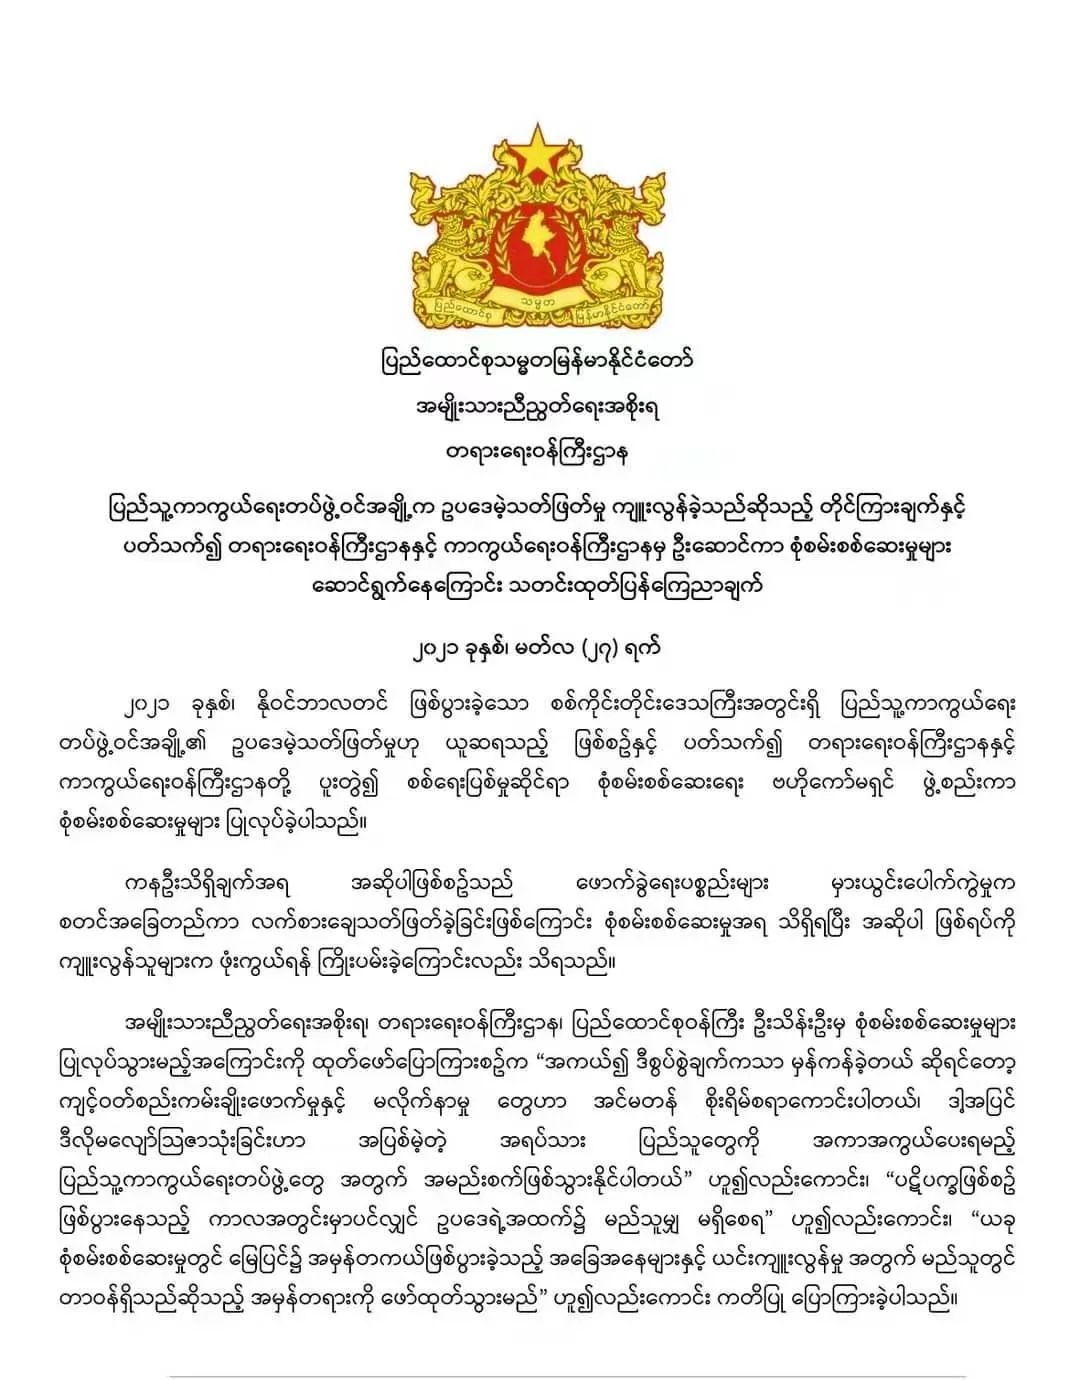 缅甸“民族团结政府”：革命是为了人民，严禁法外处决无辜平民！